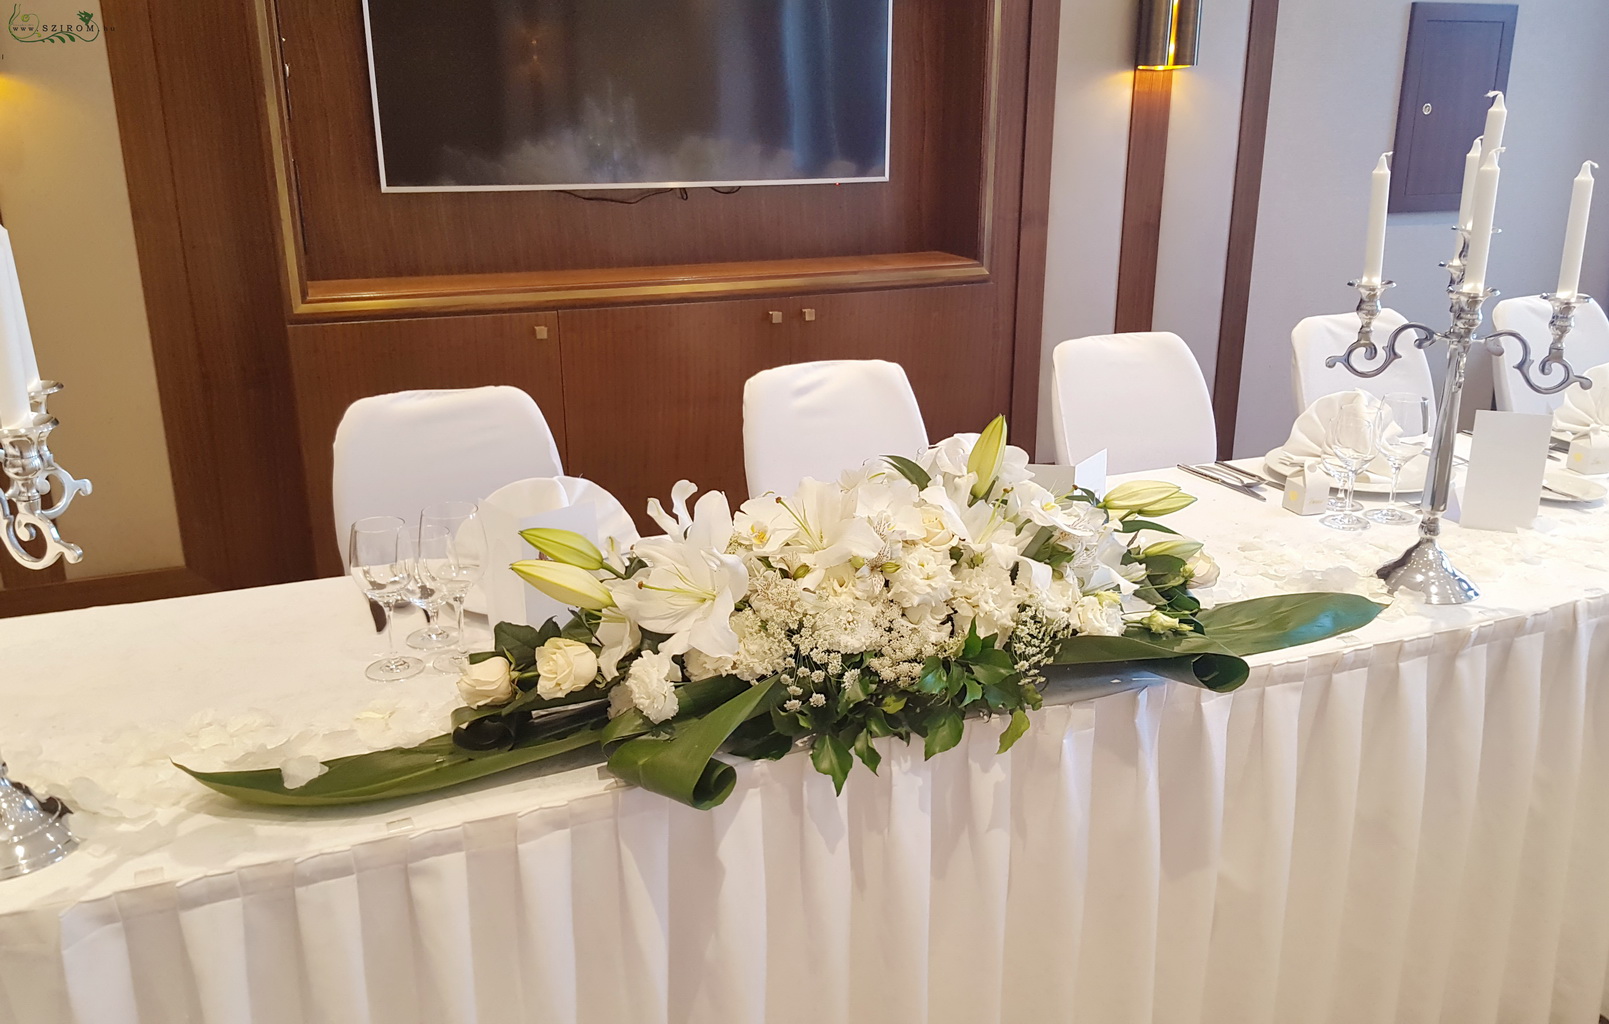 Főasztaldísz (liliom, liziantusz, rózsa, fehér) Hilton